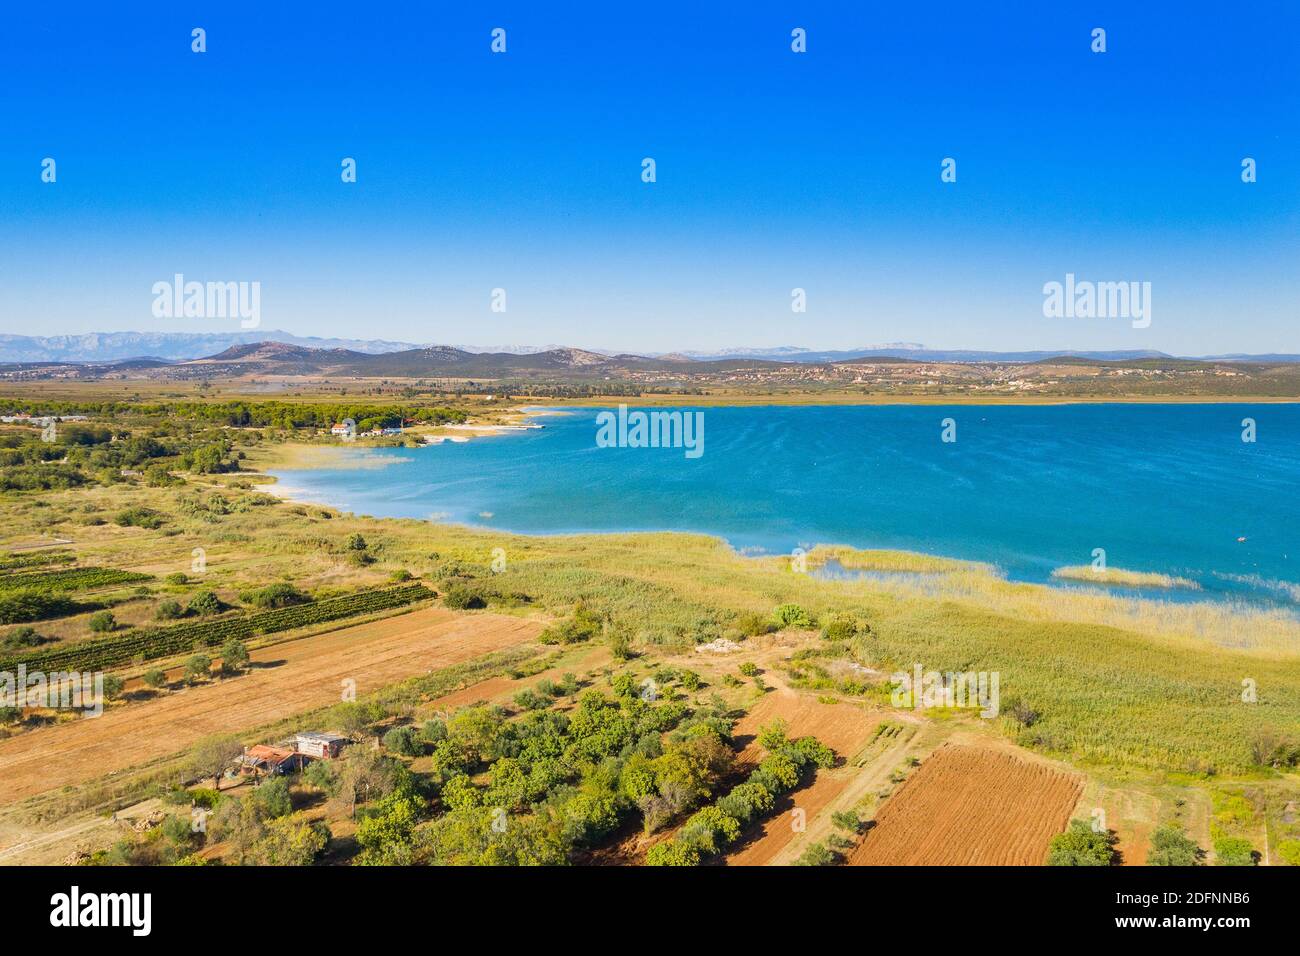 Parc naturel ornithologique, rive du lac Vrana (Vransko jezero) en Dalmatie, Croatie, vue aérienne de drone Banque D'Images